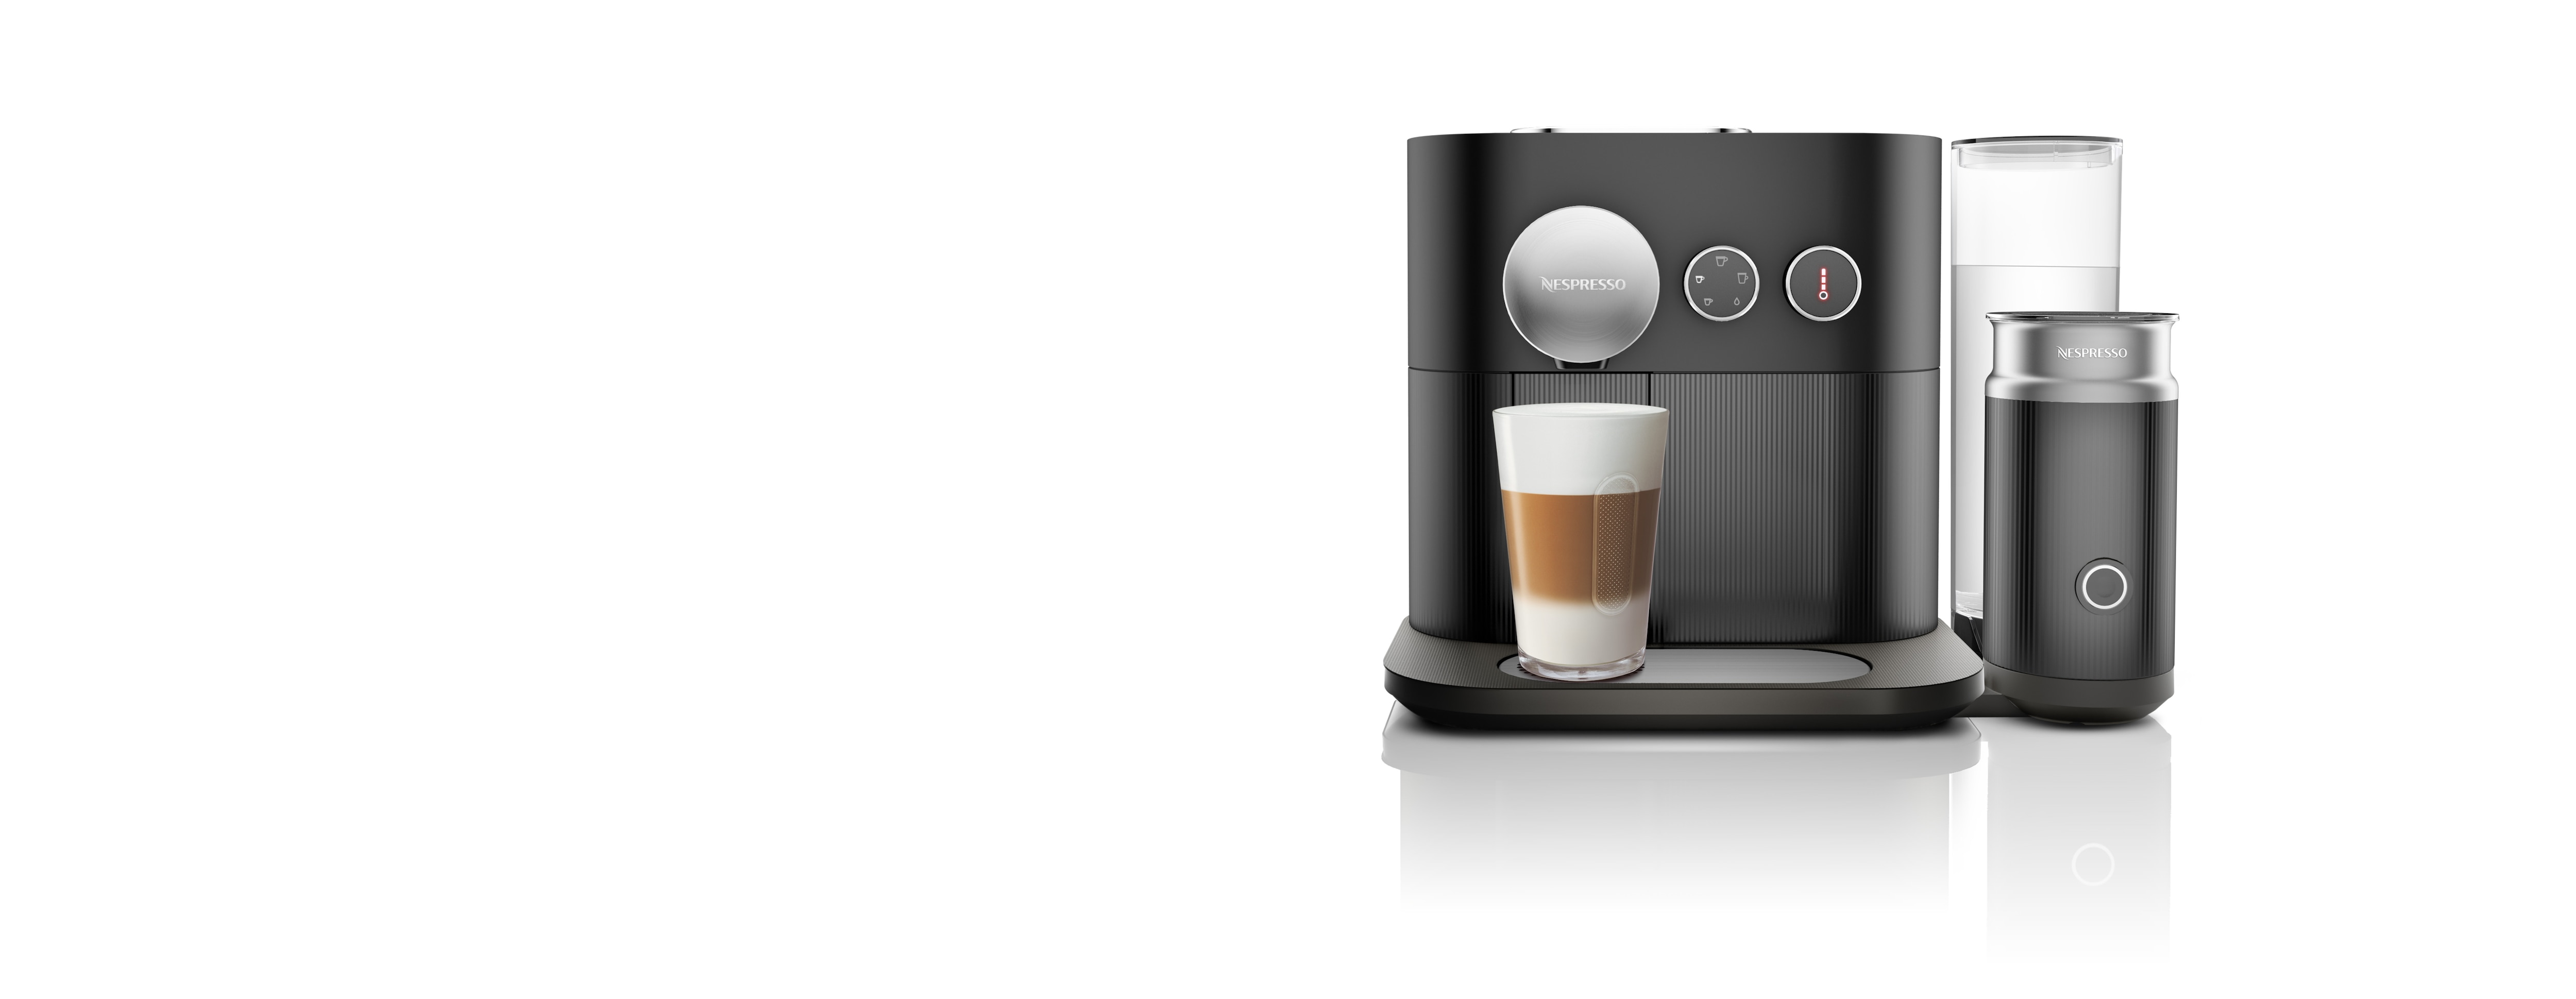 Nespresso Expert and Milk Black Bluetooth Coffee Machine | Nespresso